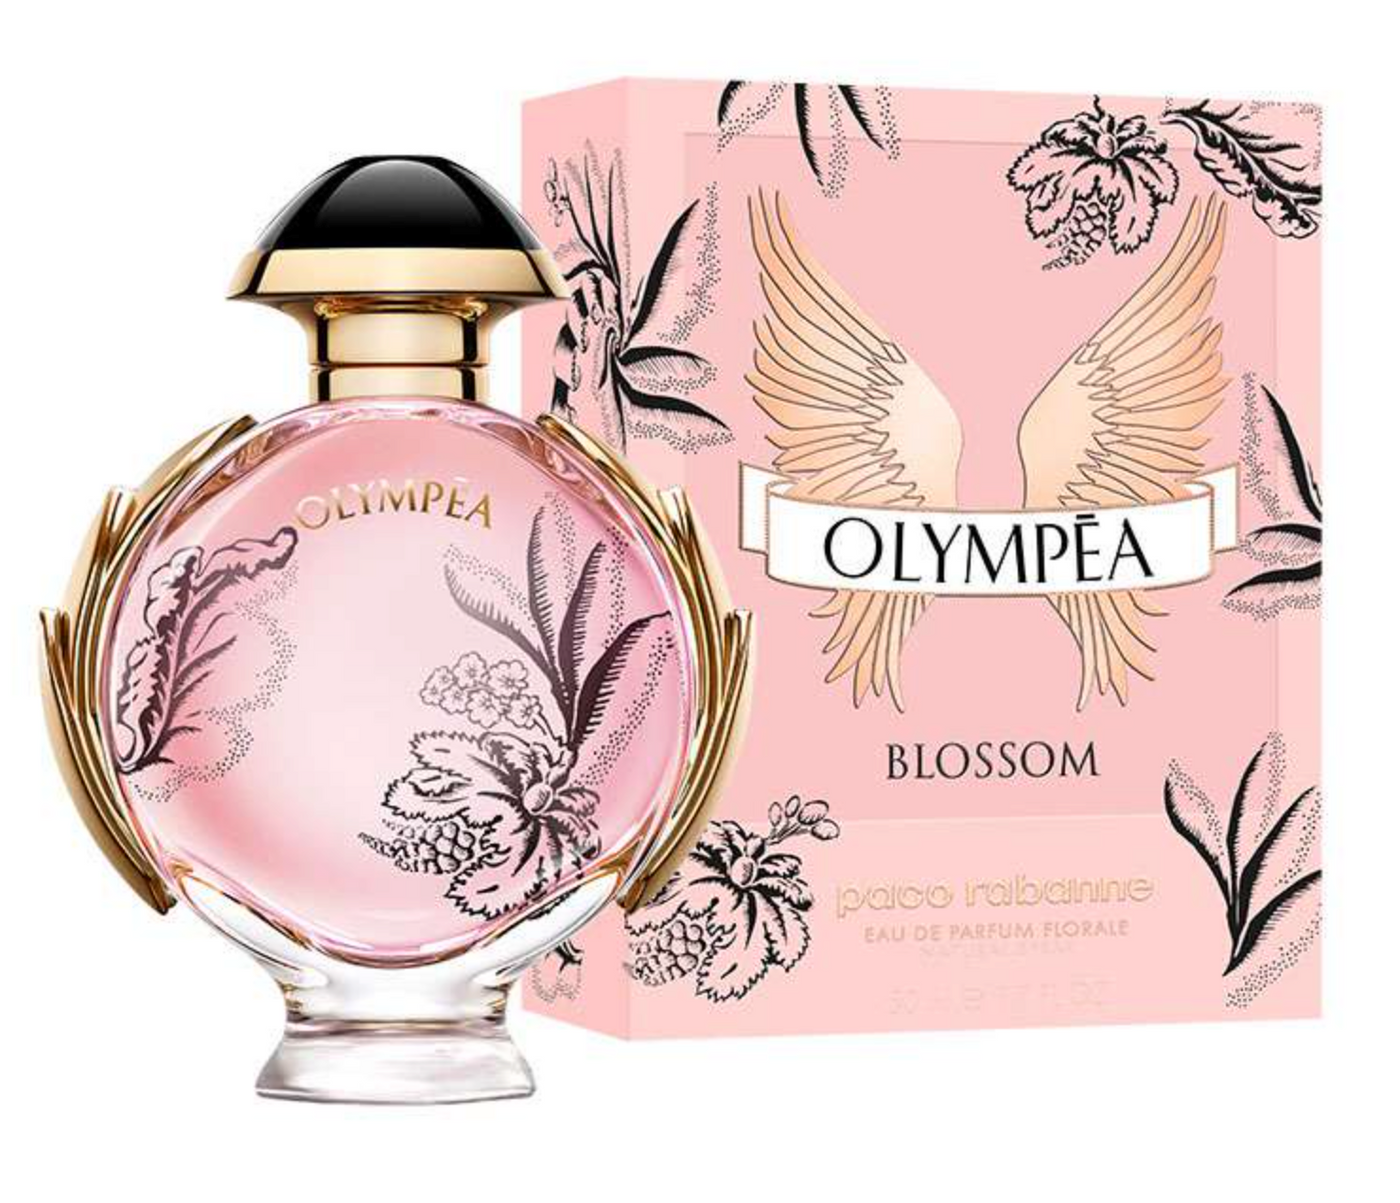 Paco Rabanne Olympea Blossom For Women Eau De Parfum Florale 80Ml Tester